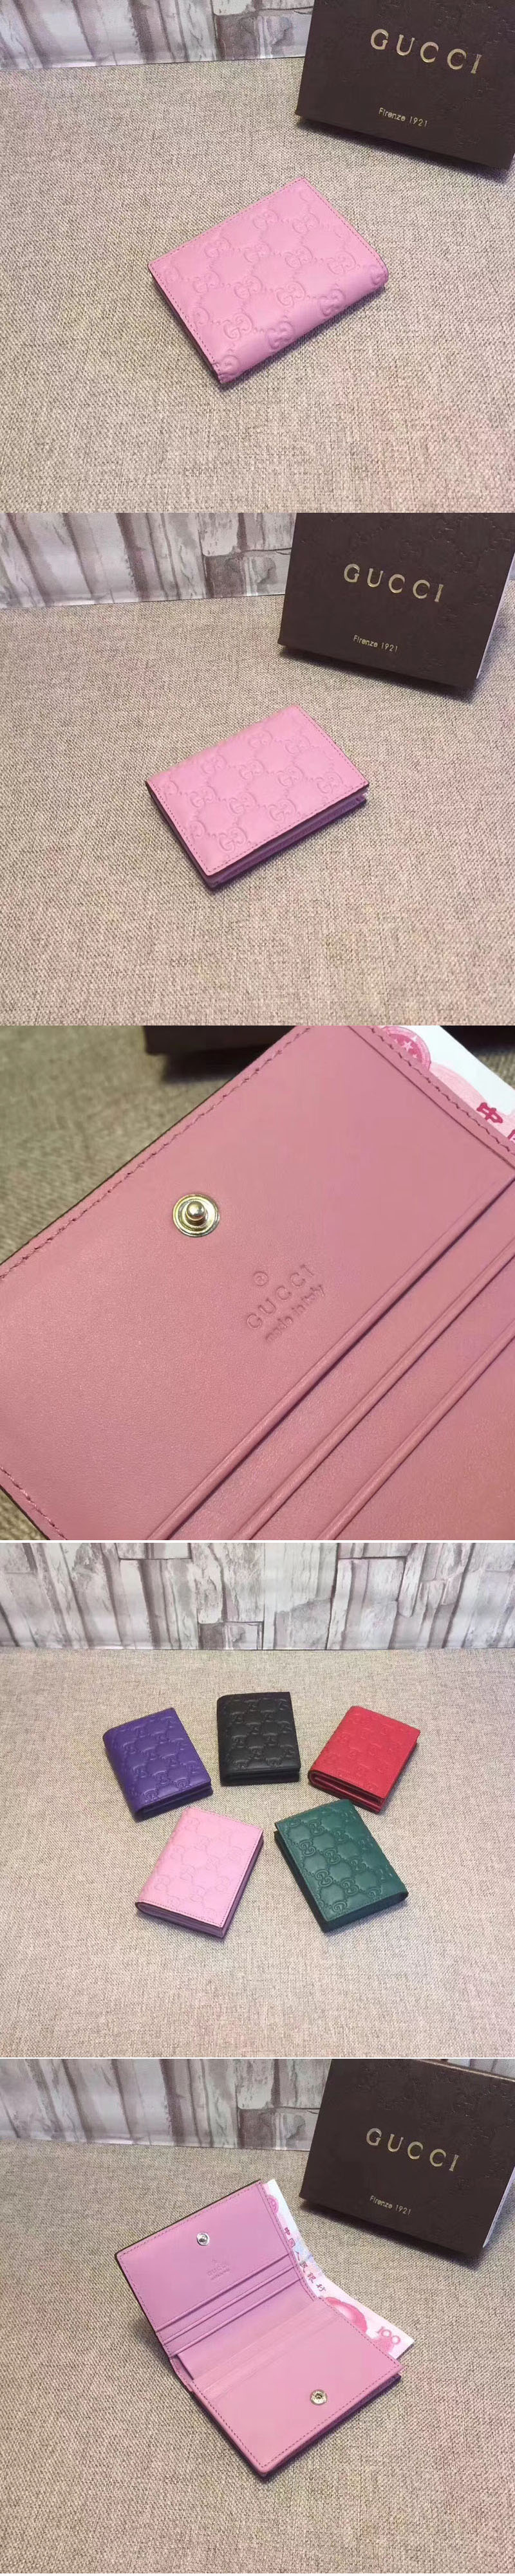 Replica Gucci 410120 Signature card case Pink